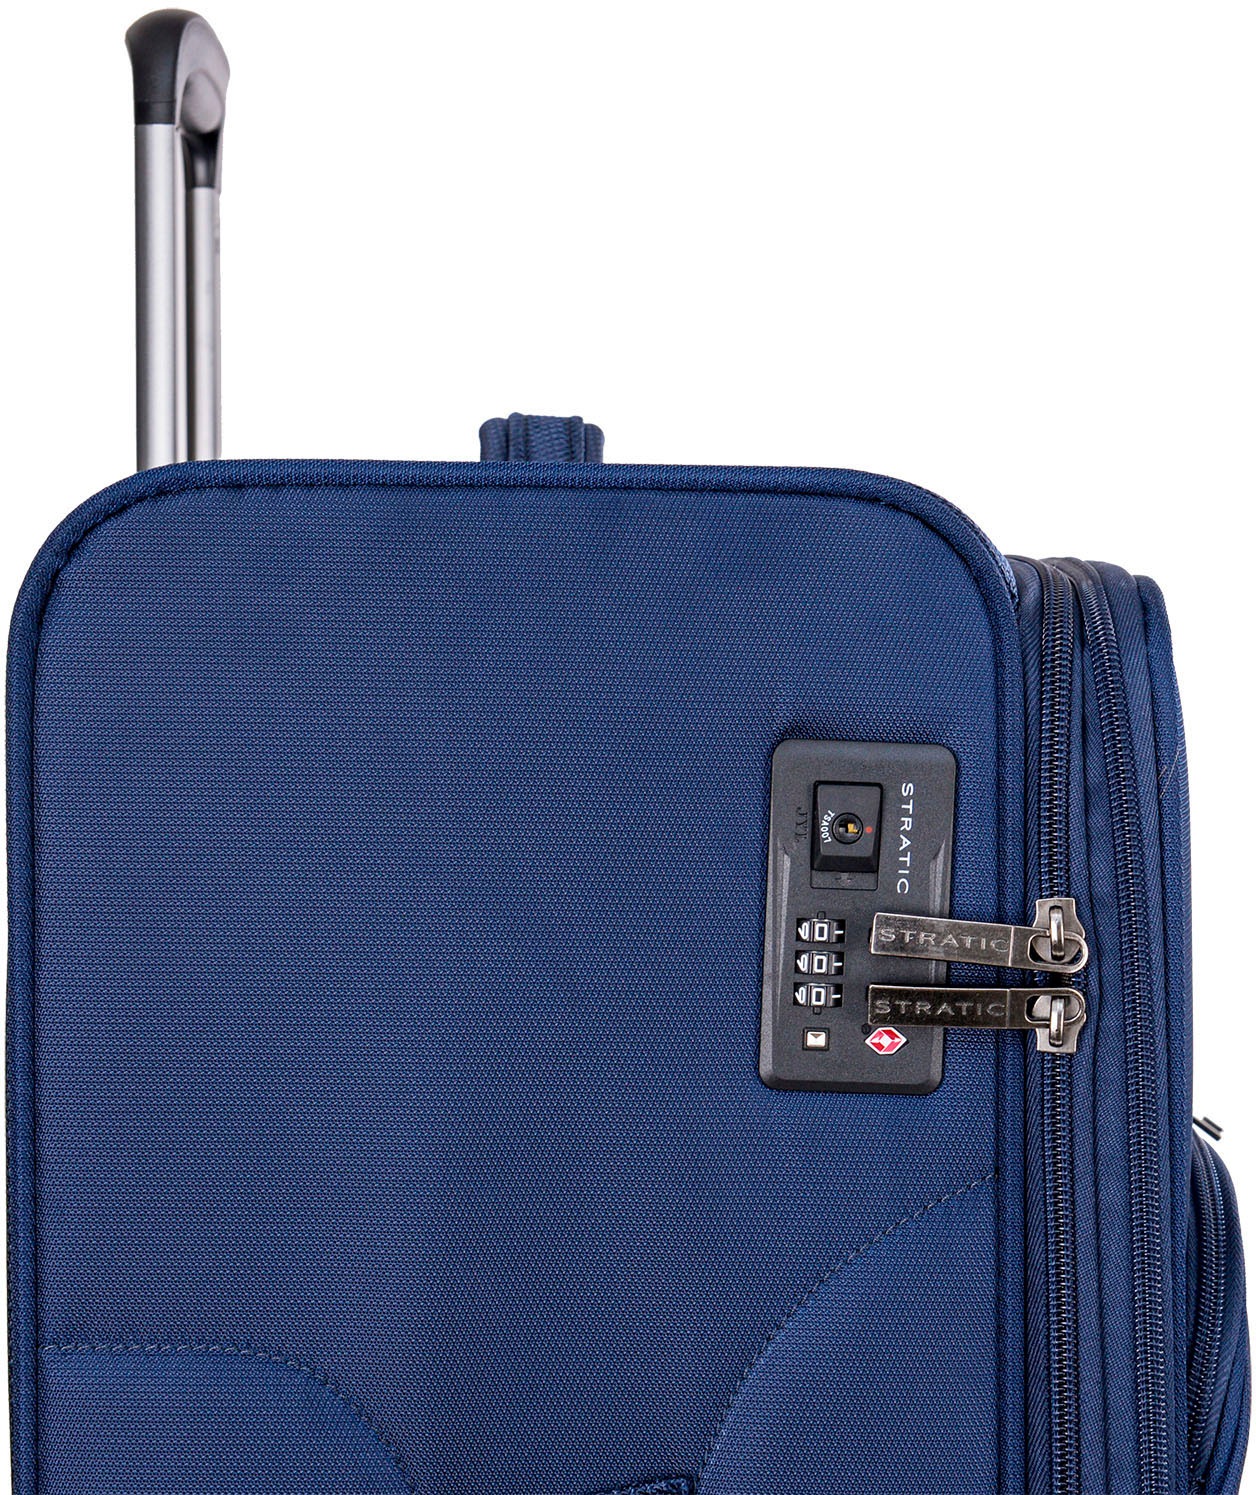 Stratic Weichgepäck-Trolley »Mix L, blue«, 4 Rollen, Reisekoffer großer Koffer Aufgabegepäck TSA-Zahlenschloss